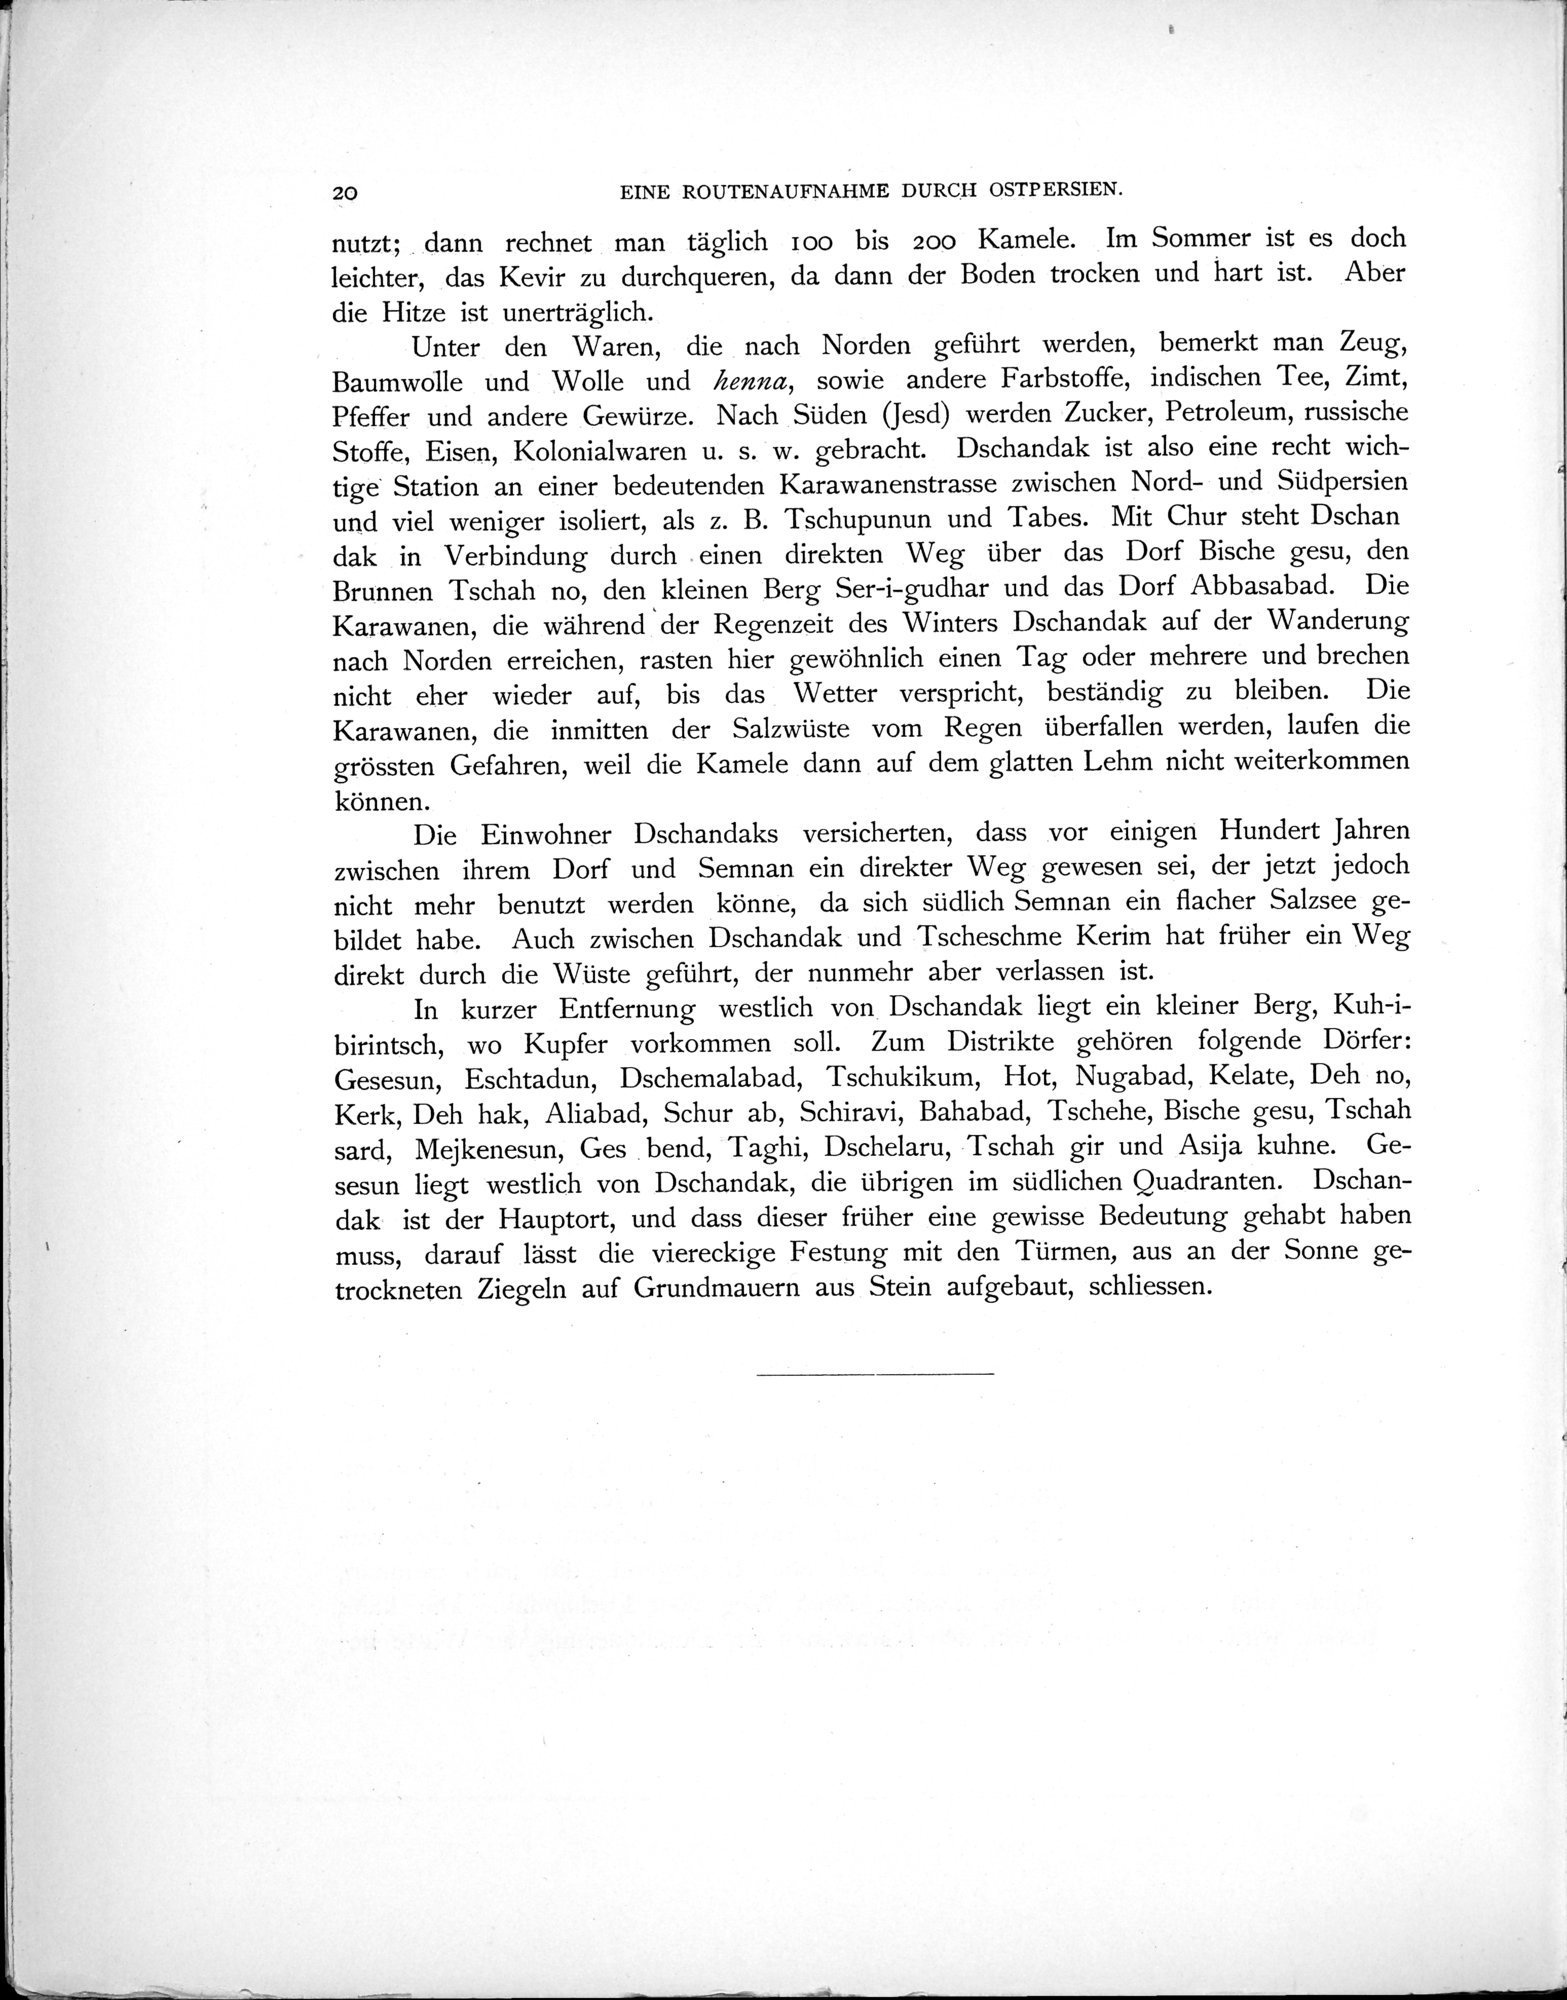 Eine Routenaufnahme durch Ostpersien : vol.1 / Page 70 (Grayscale High Resolution Image)